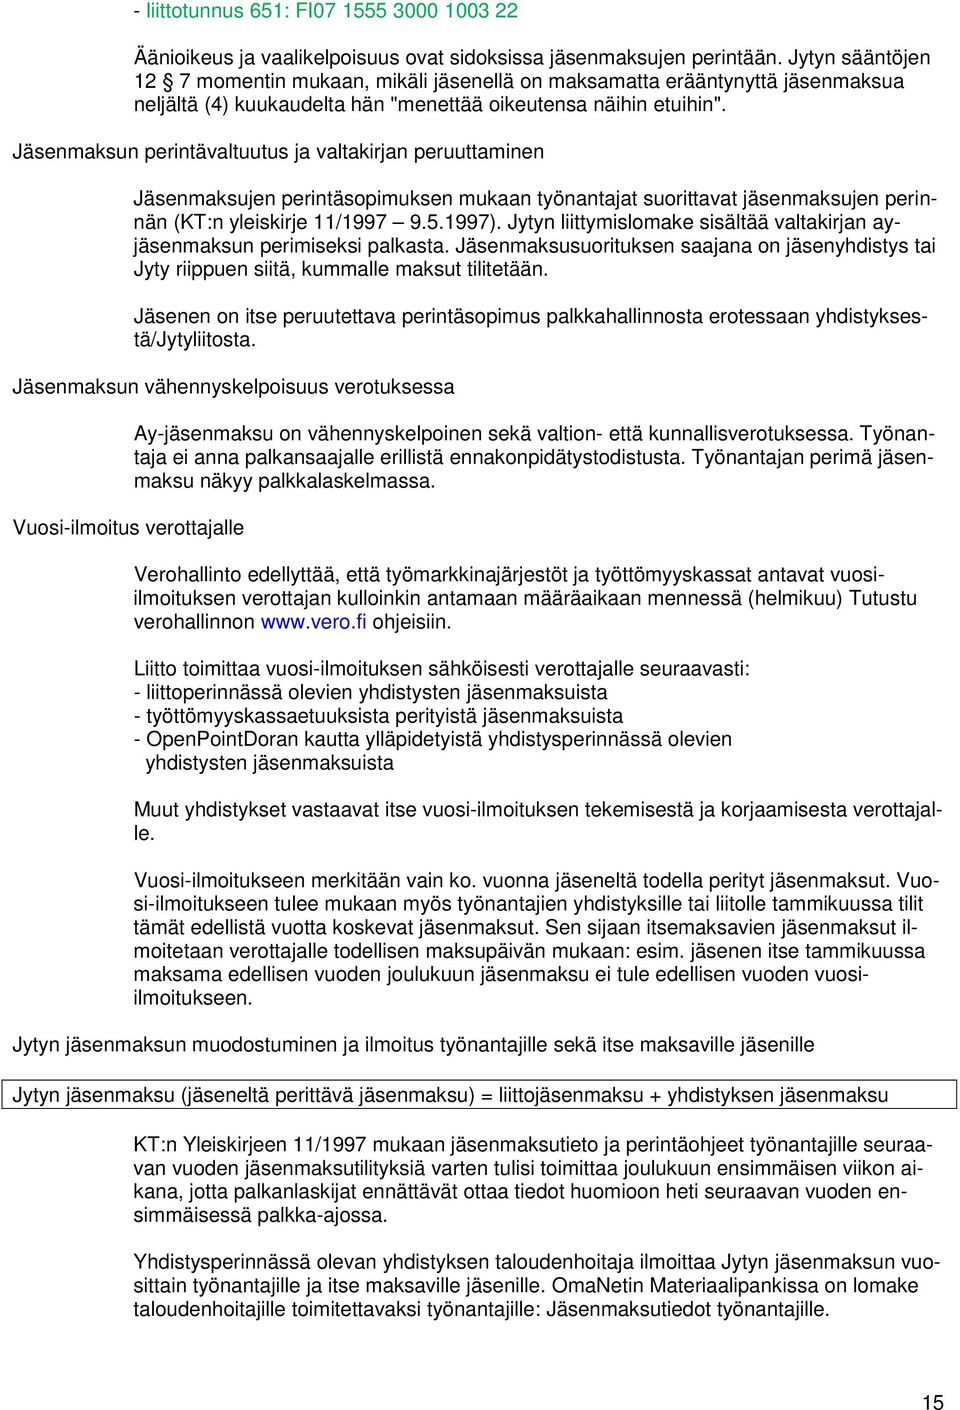 Jäsenmaksun perintävaltuutus ja valtakirjan peruuttaminen Jäsenmaksujen perintäsopimuksen mukaan työnantajat suorittavat jäsenmaksujen perinnän (KT:n yleiskirje 11/1997 9.5.1997).